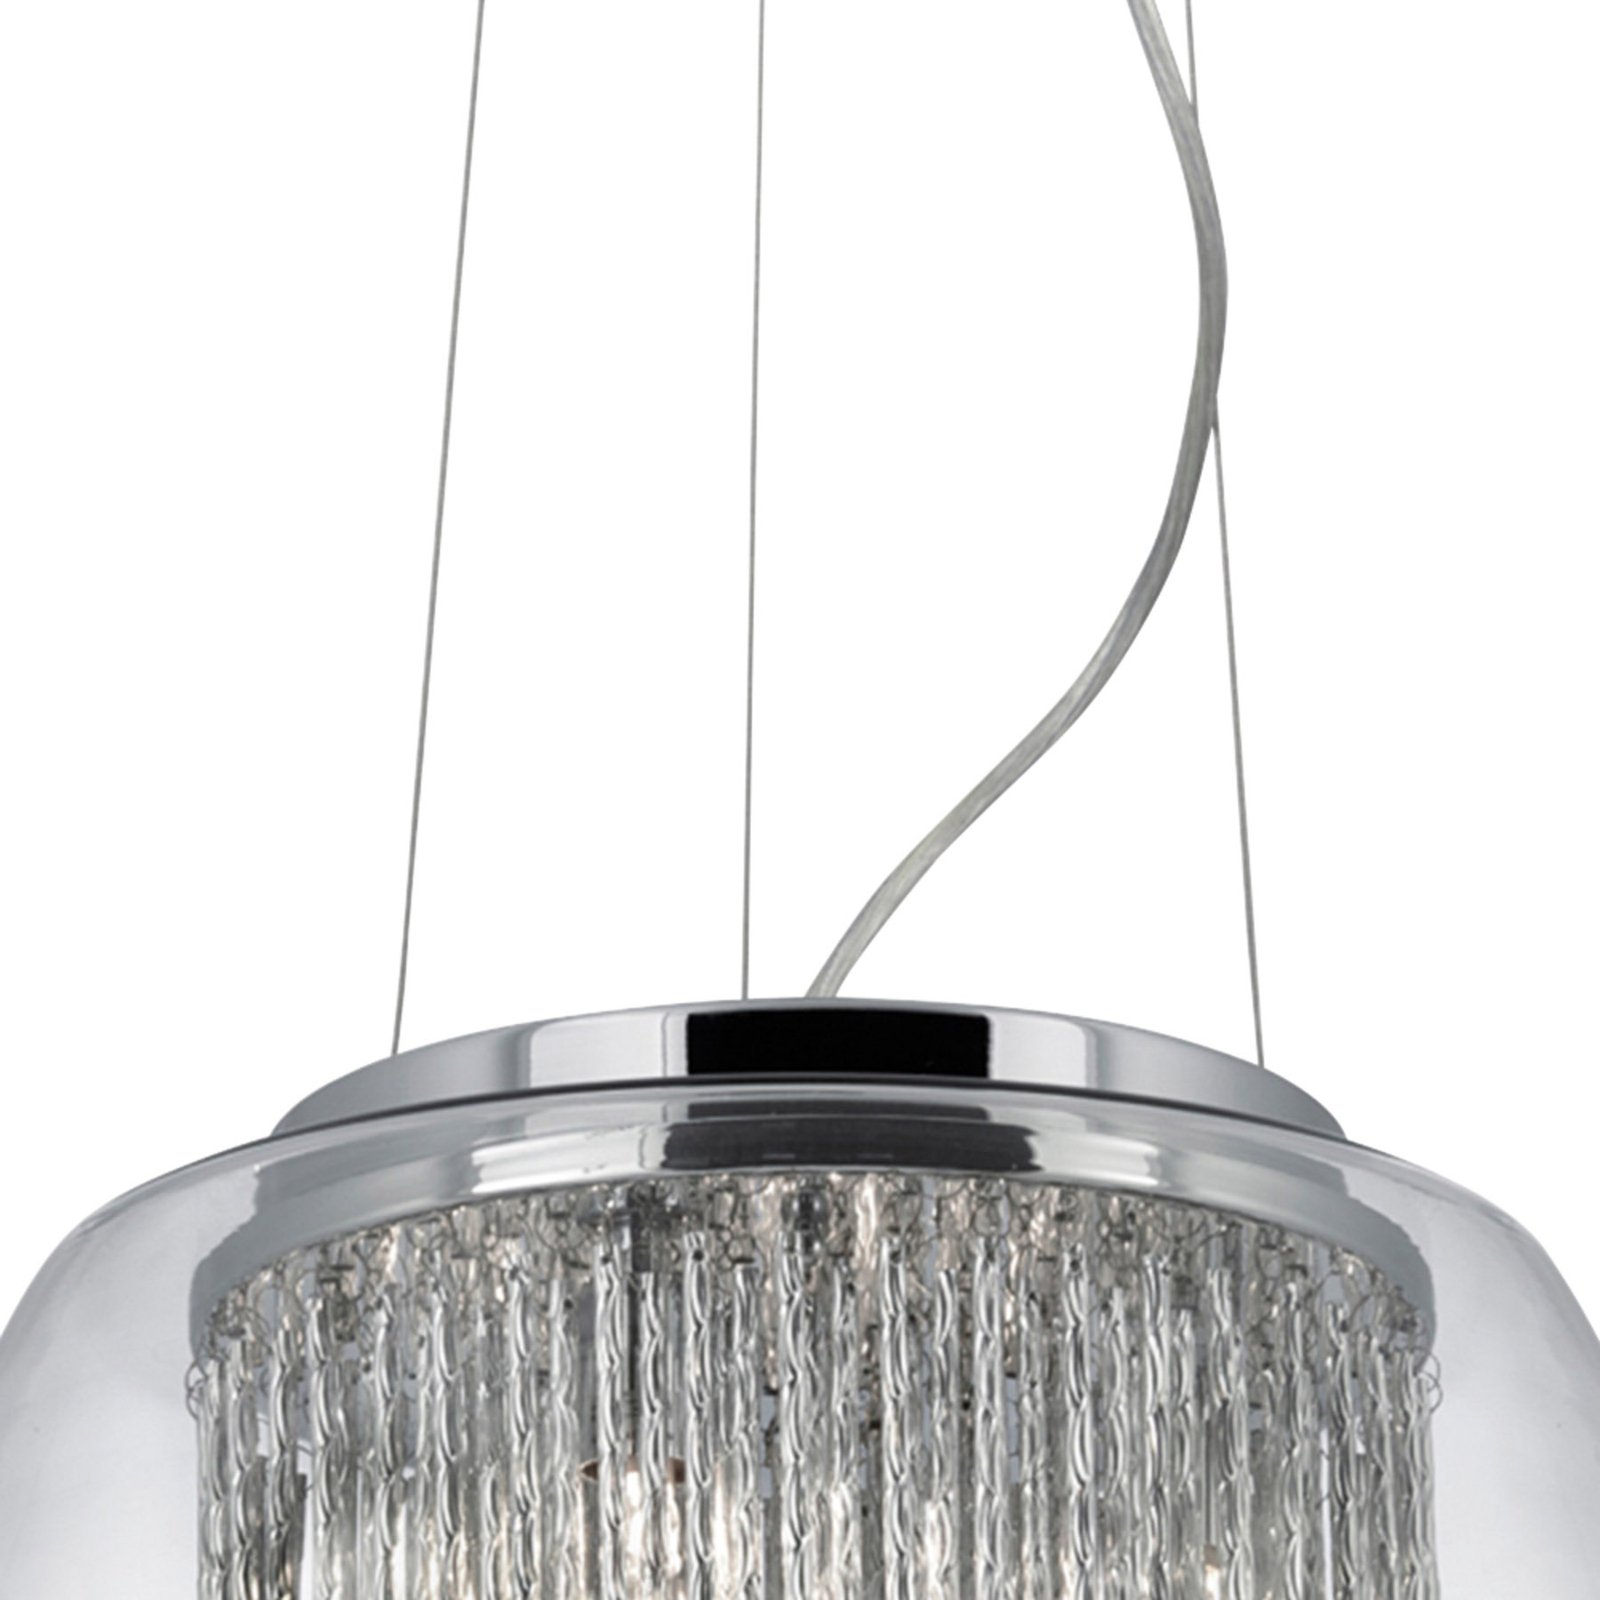 Sklenená závesná lampa Curva v brilantnom dizajne